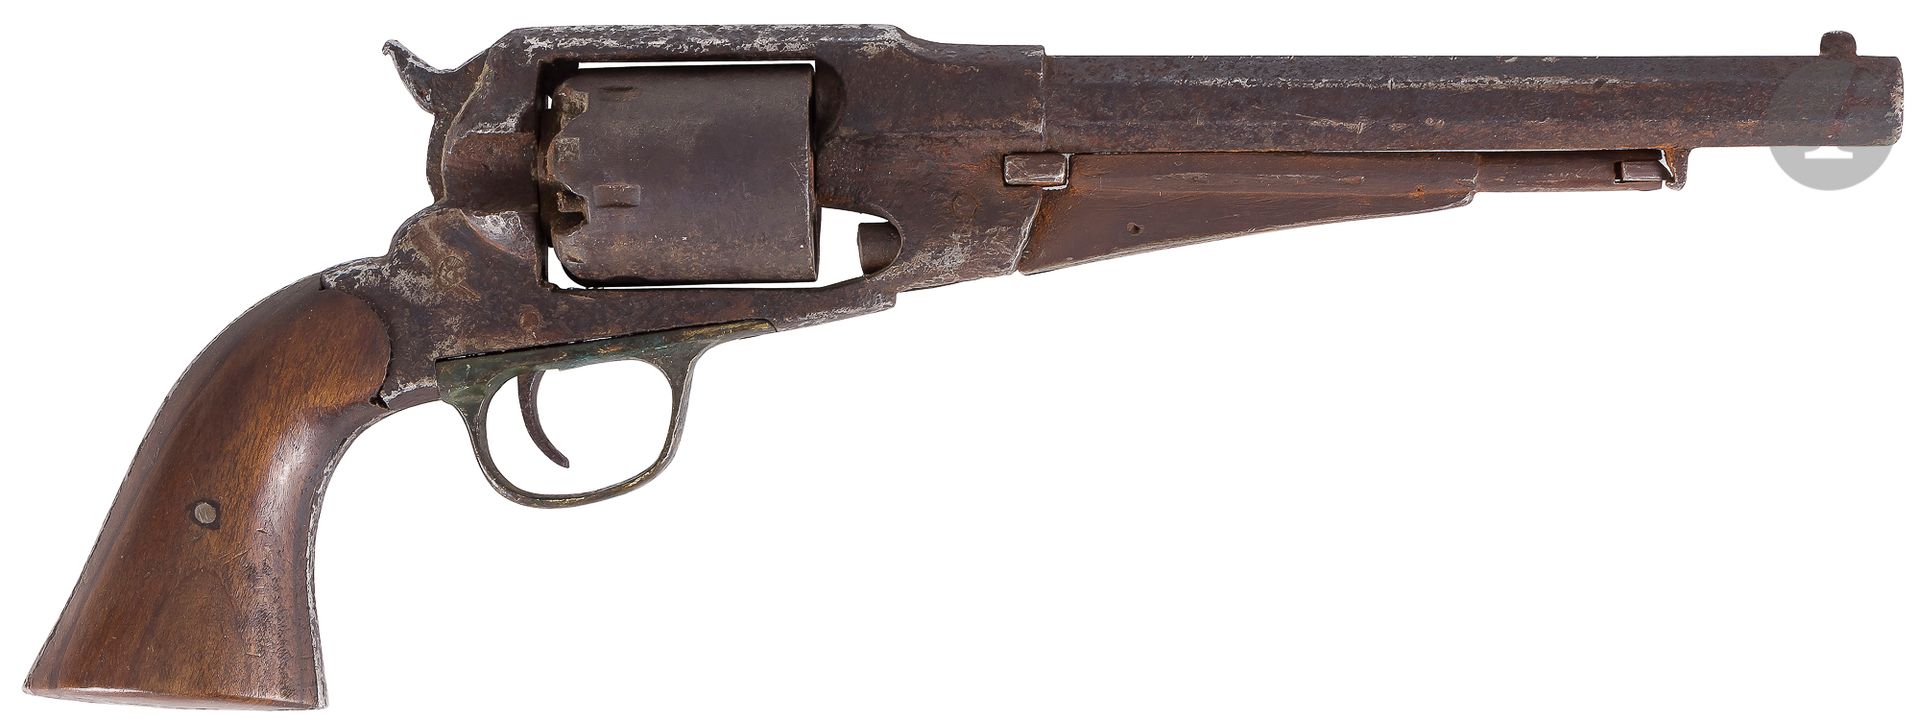 Null 雷明顿1861型六连发打击式左轮手枪，.44陆军口径。

带边的桶。胡桃木库存板。

发掘的状况，历史的见证。



1862年制造，6,000件。